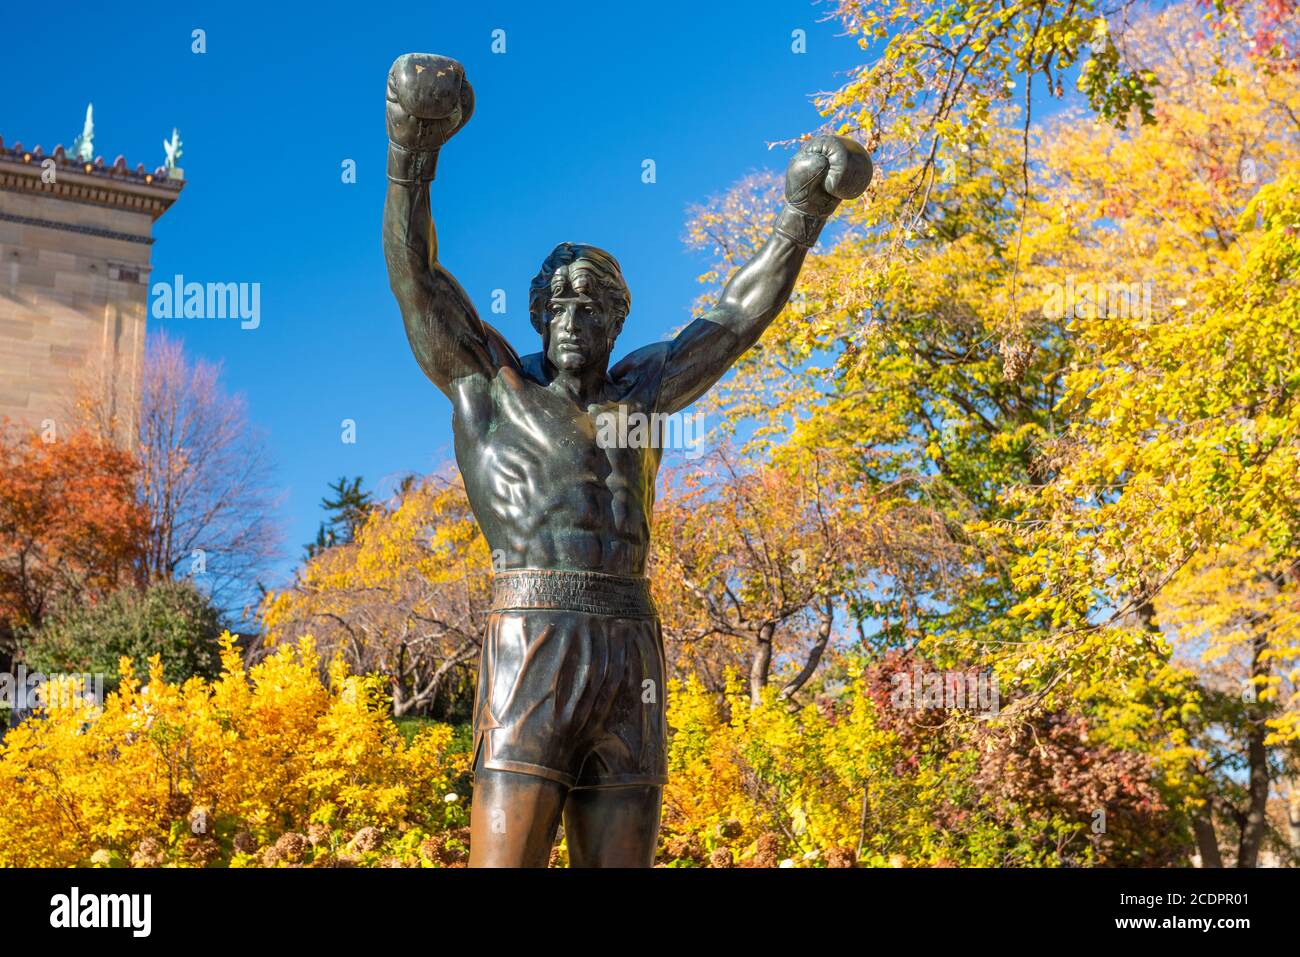 PHILADELPHIA, PENNSYLVANIA - NOVEMBR 16, 2016: La statua di Rocky Balboa durante l'autunno. La statua commemora la serie di film Rocky che ha beco Foto Stock